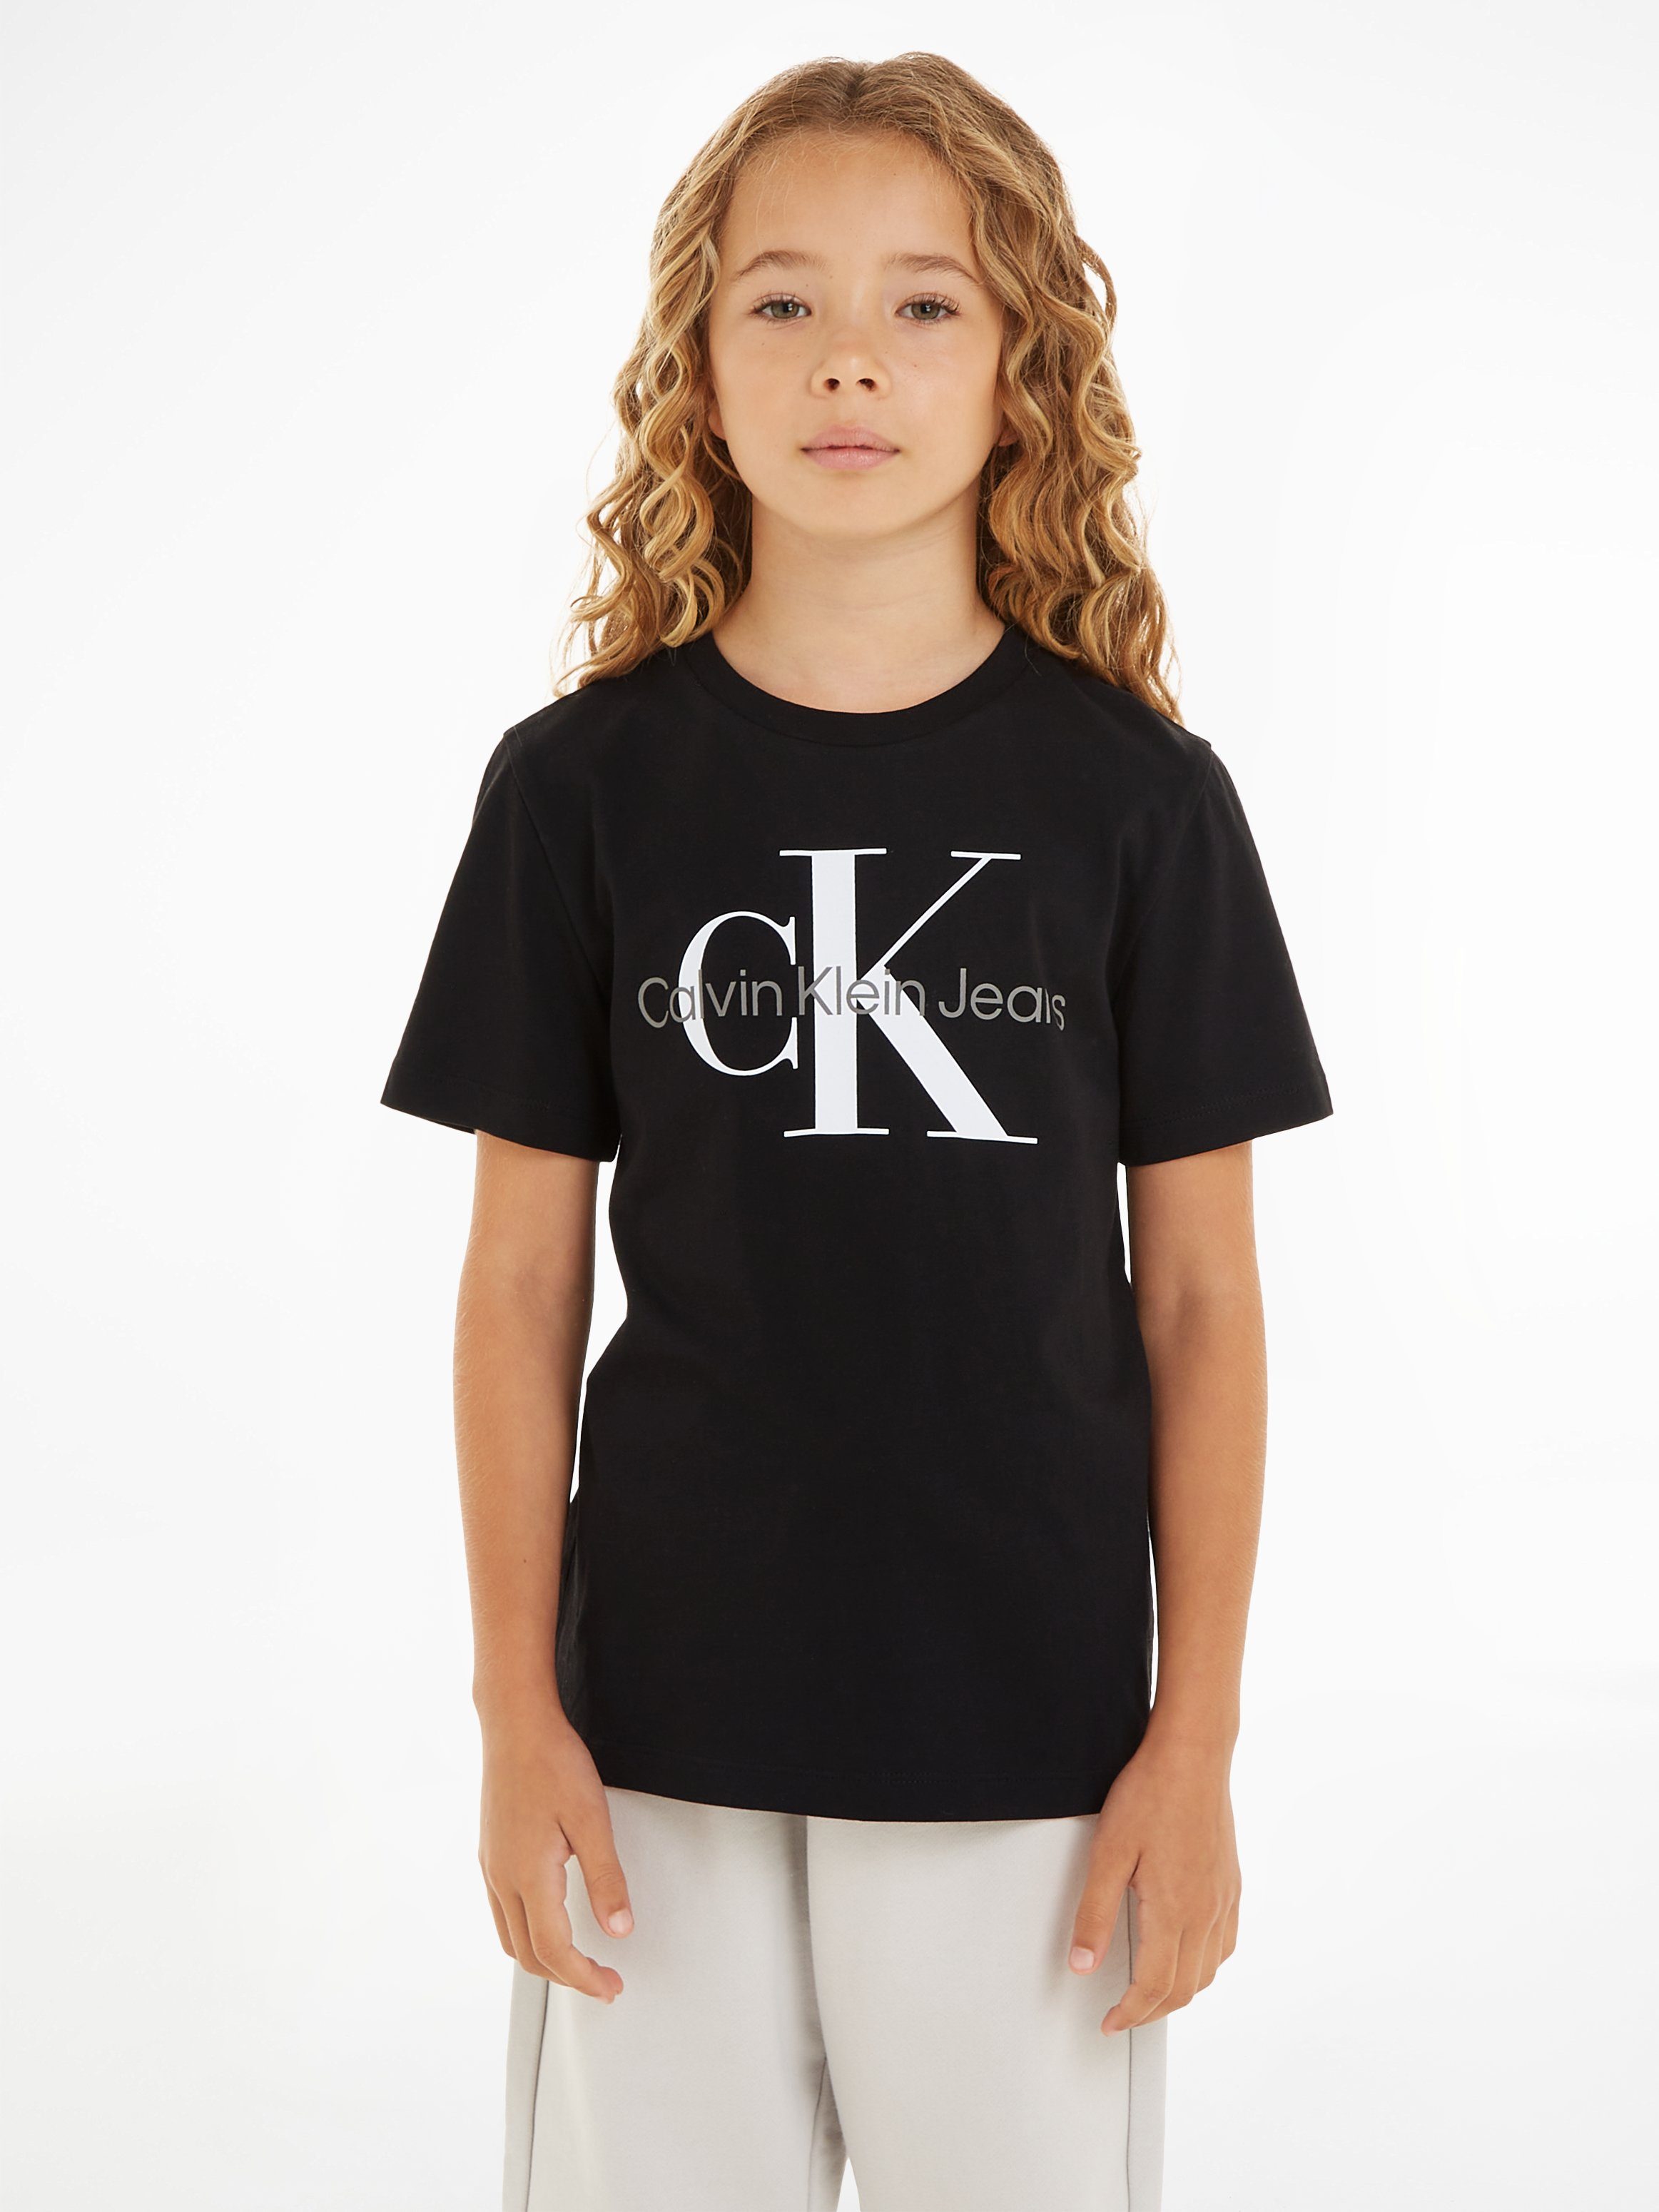 SS Klein Jeans Calvin Black CK Ck T-SHIRT T-Shirt MONOGRAM